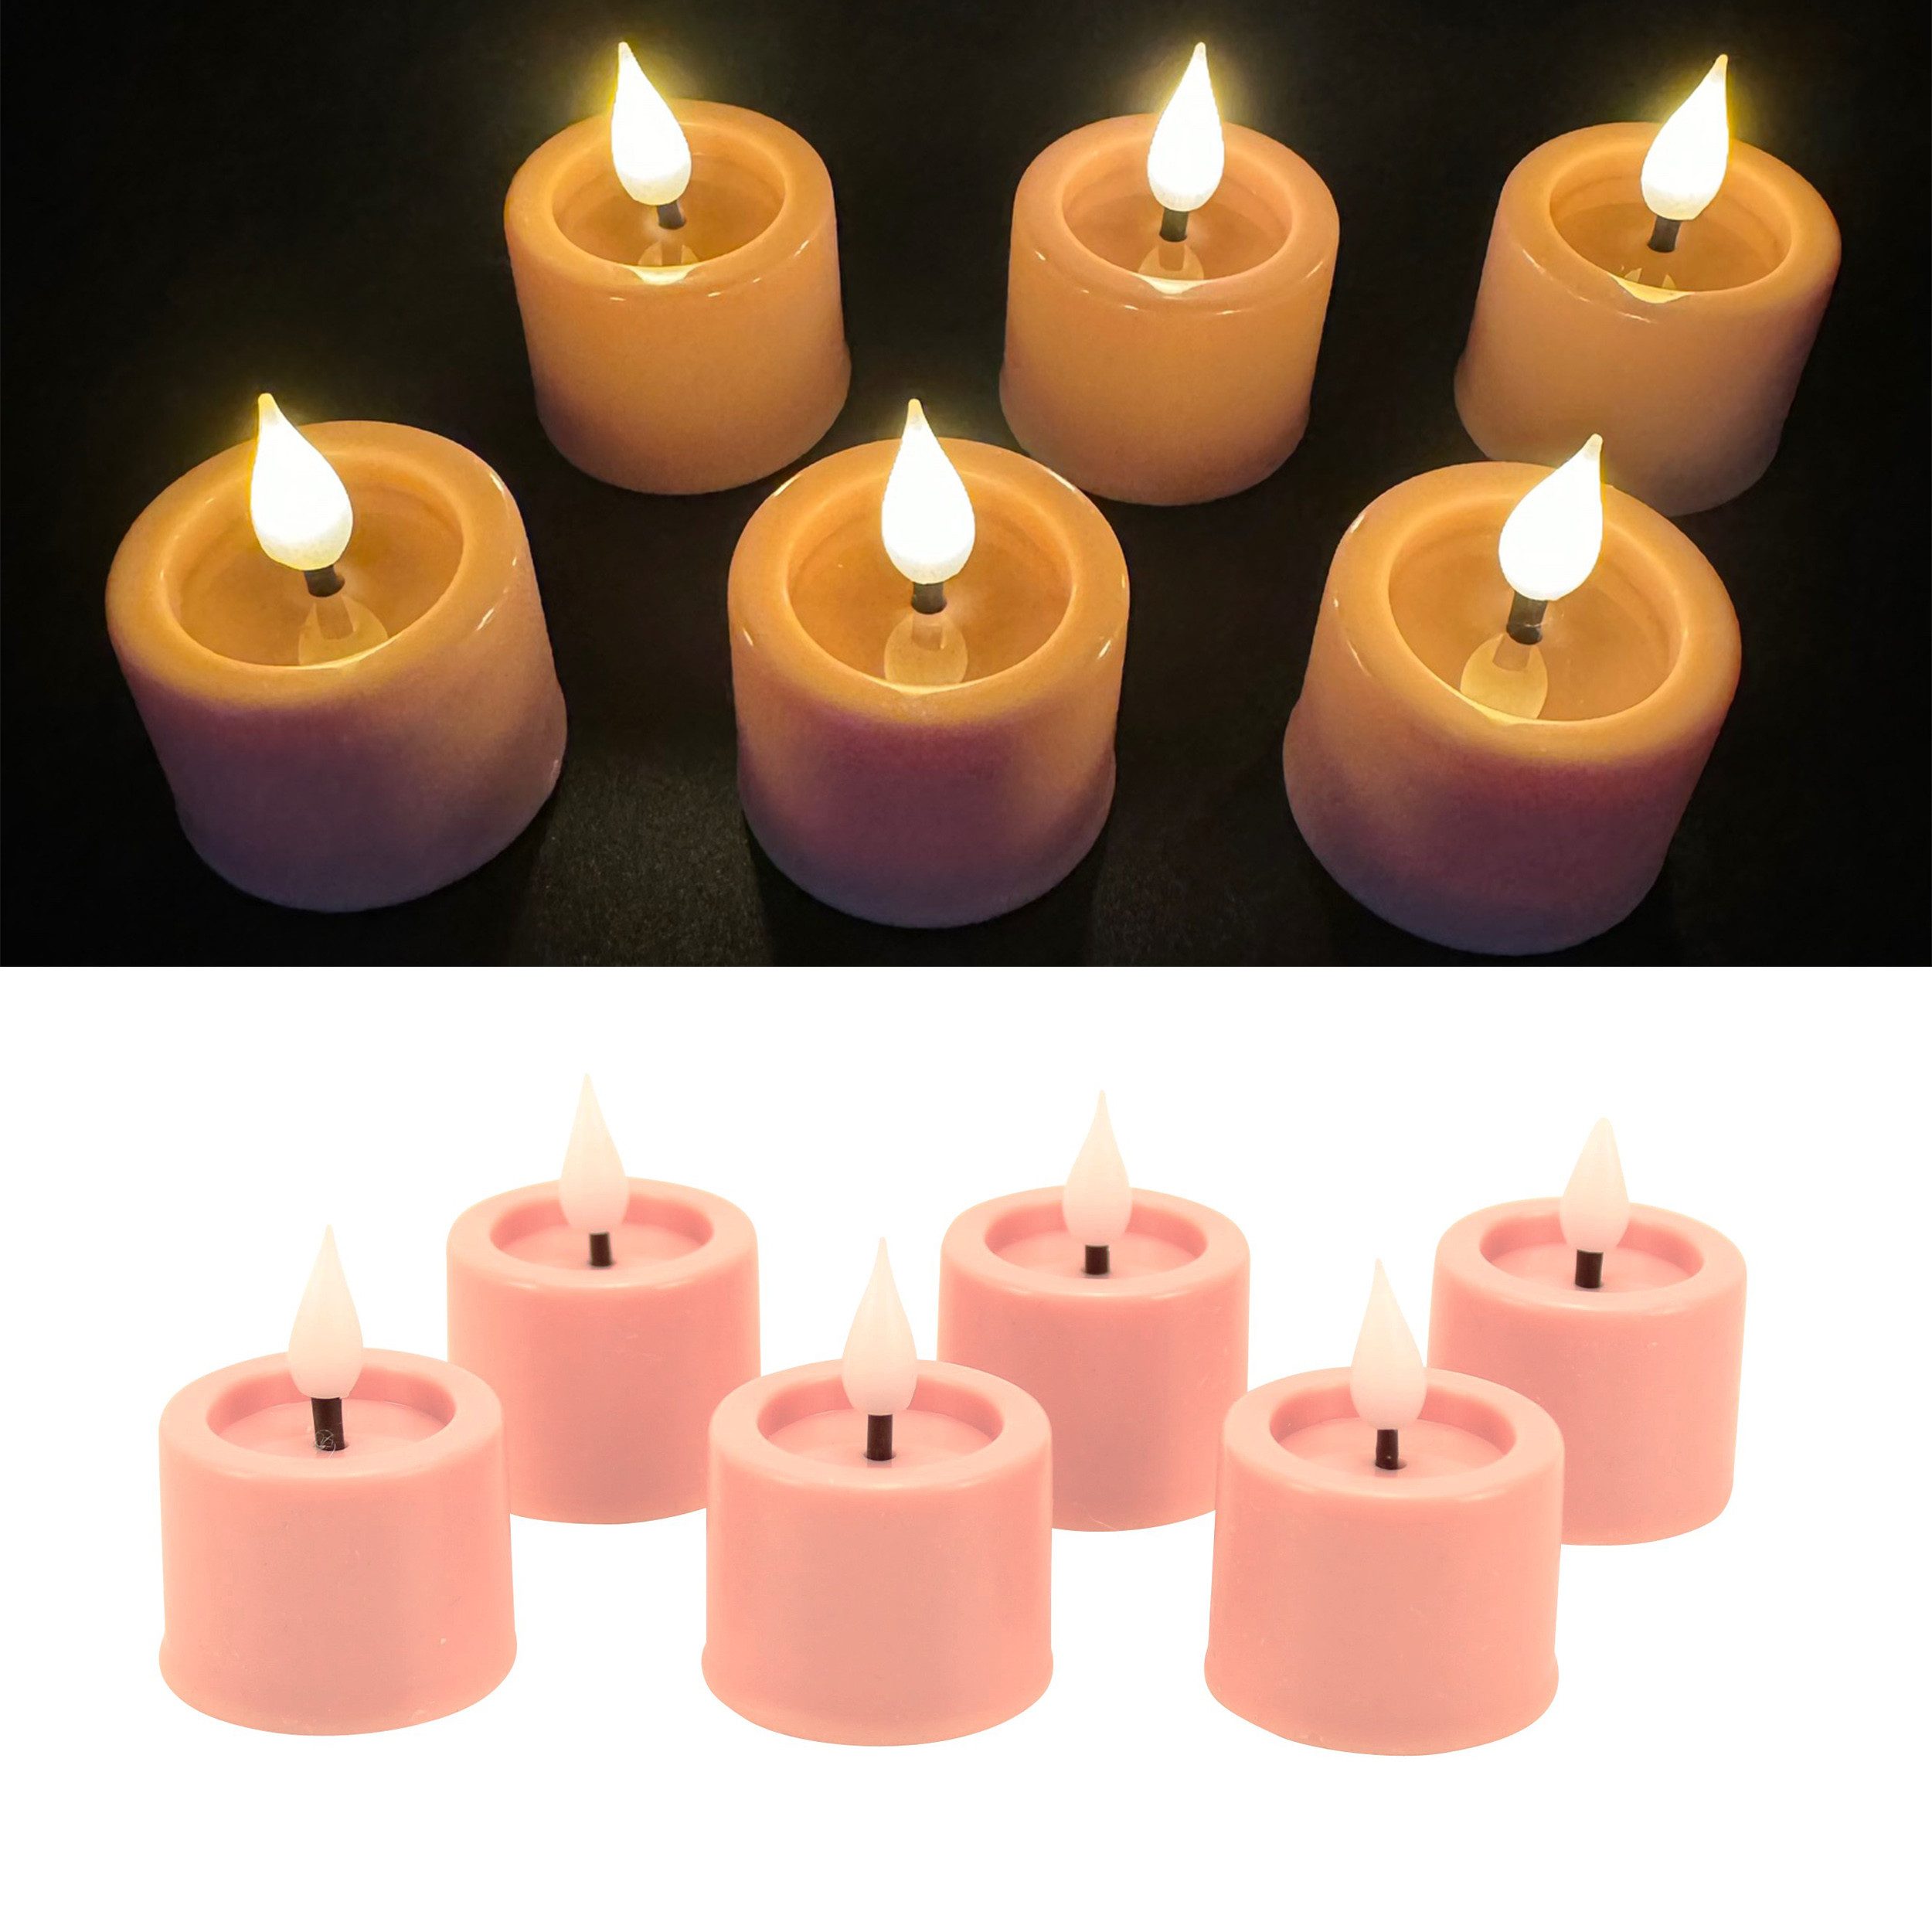 Online-Fuchs LED-Kerze als 6er Set Teelichter mit Flamme, Puderrosa 191 (mit Echtwachs überzogen, spiegelnde Flamme), Maße: 4 x 3 cm, Fernbedienung, 6-Stunden-Timer